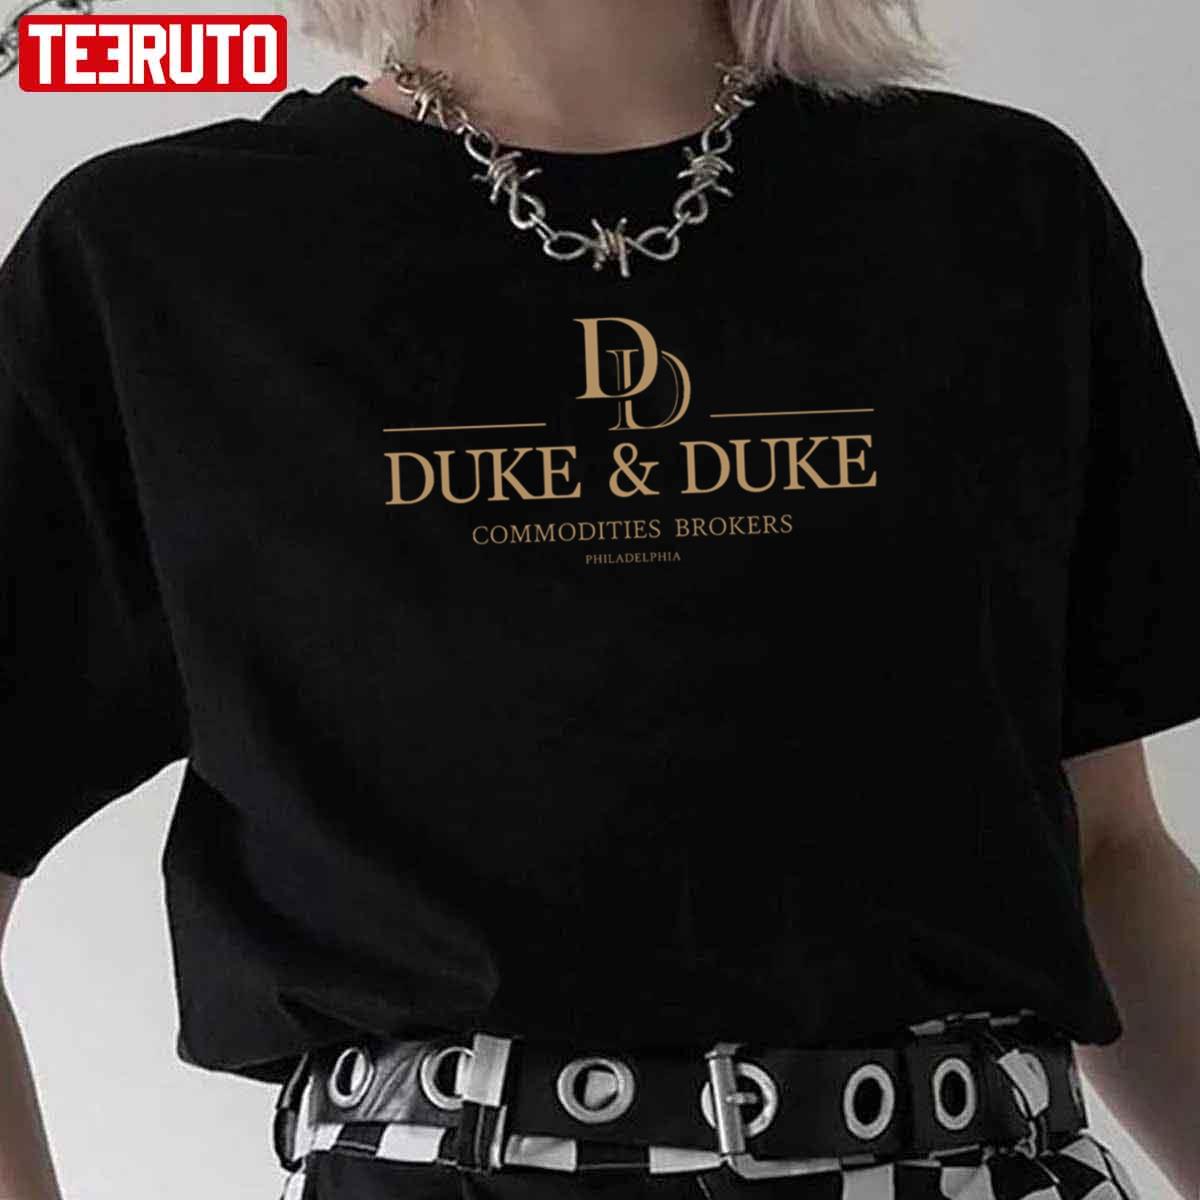 Duke & Duke Trading Places Gold Variant Unisex T-Shirt